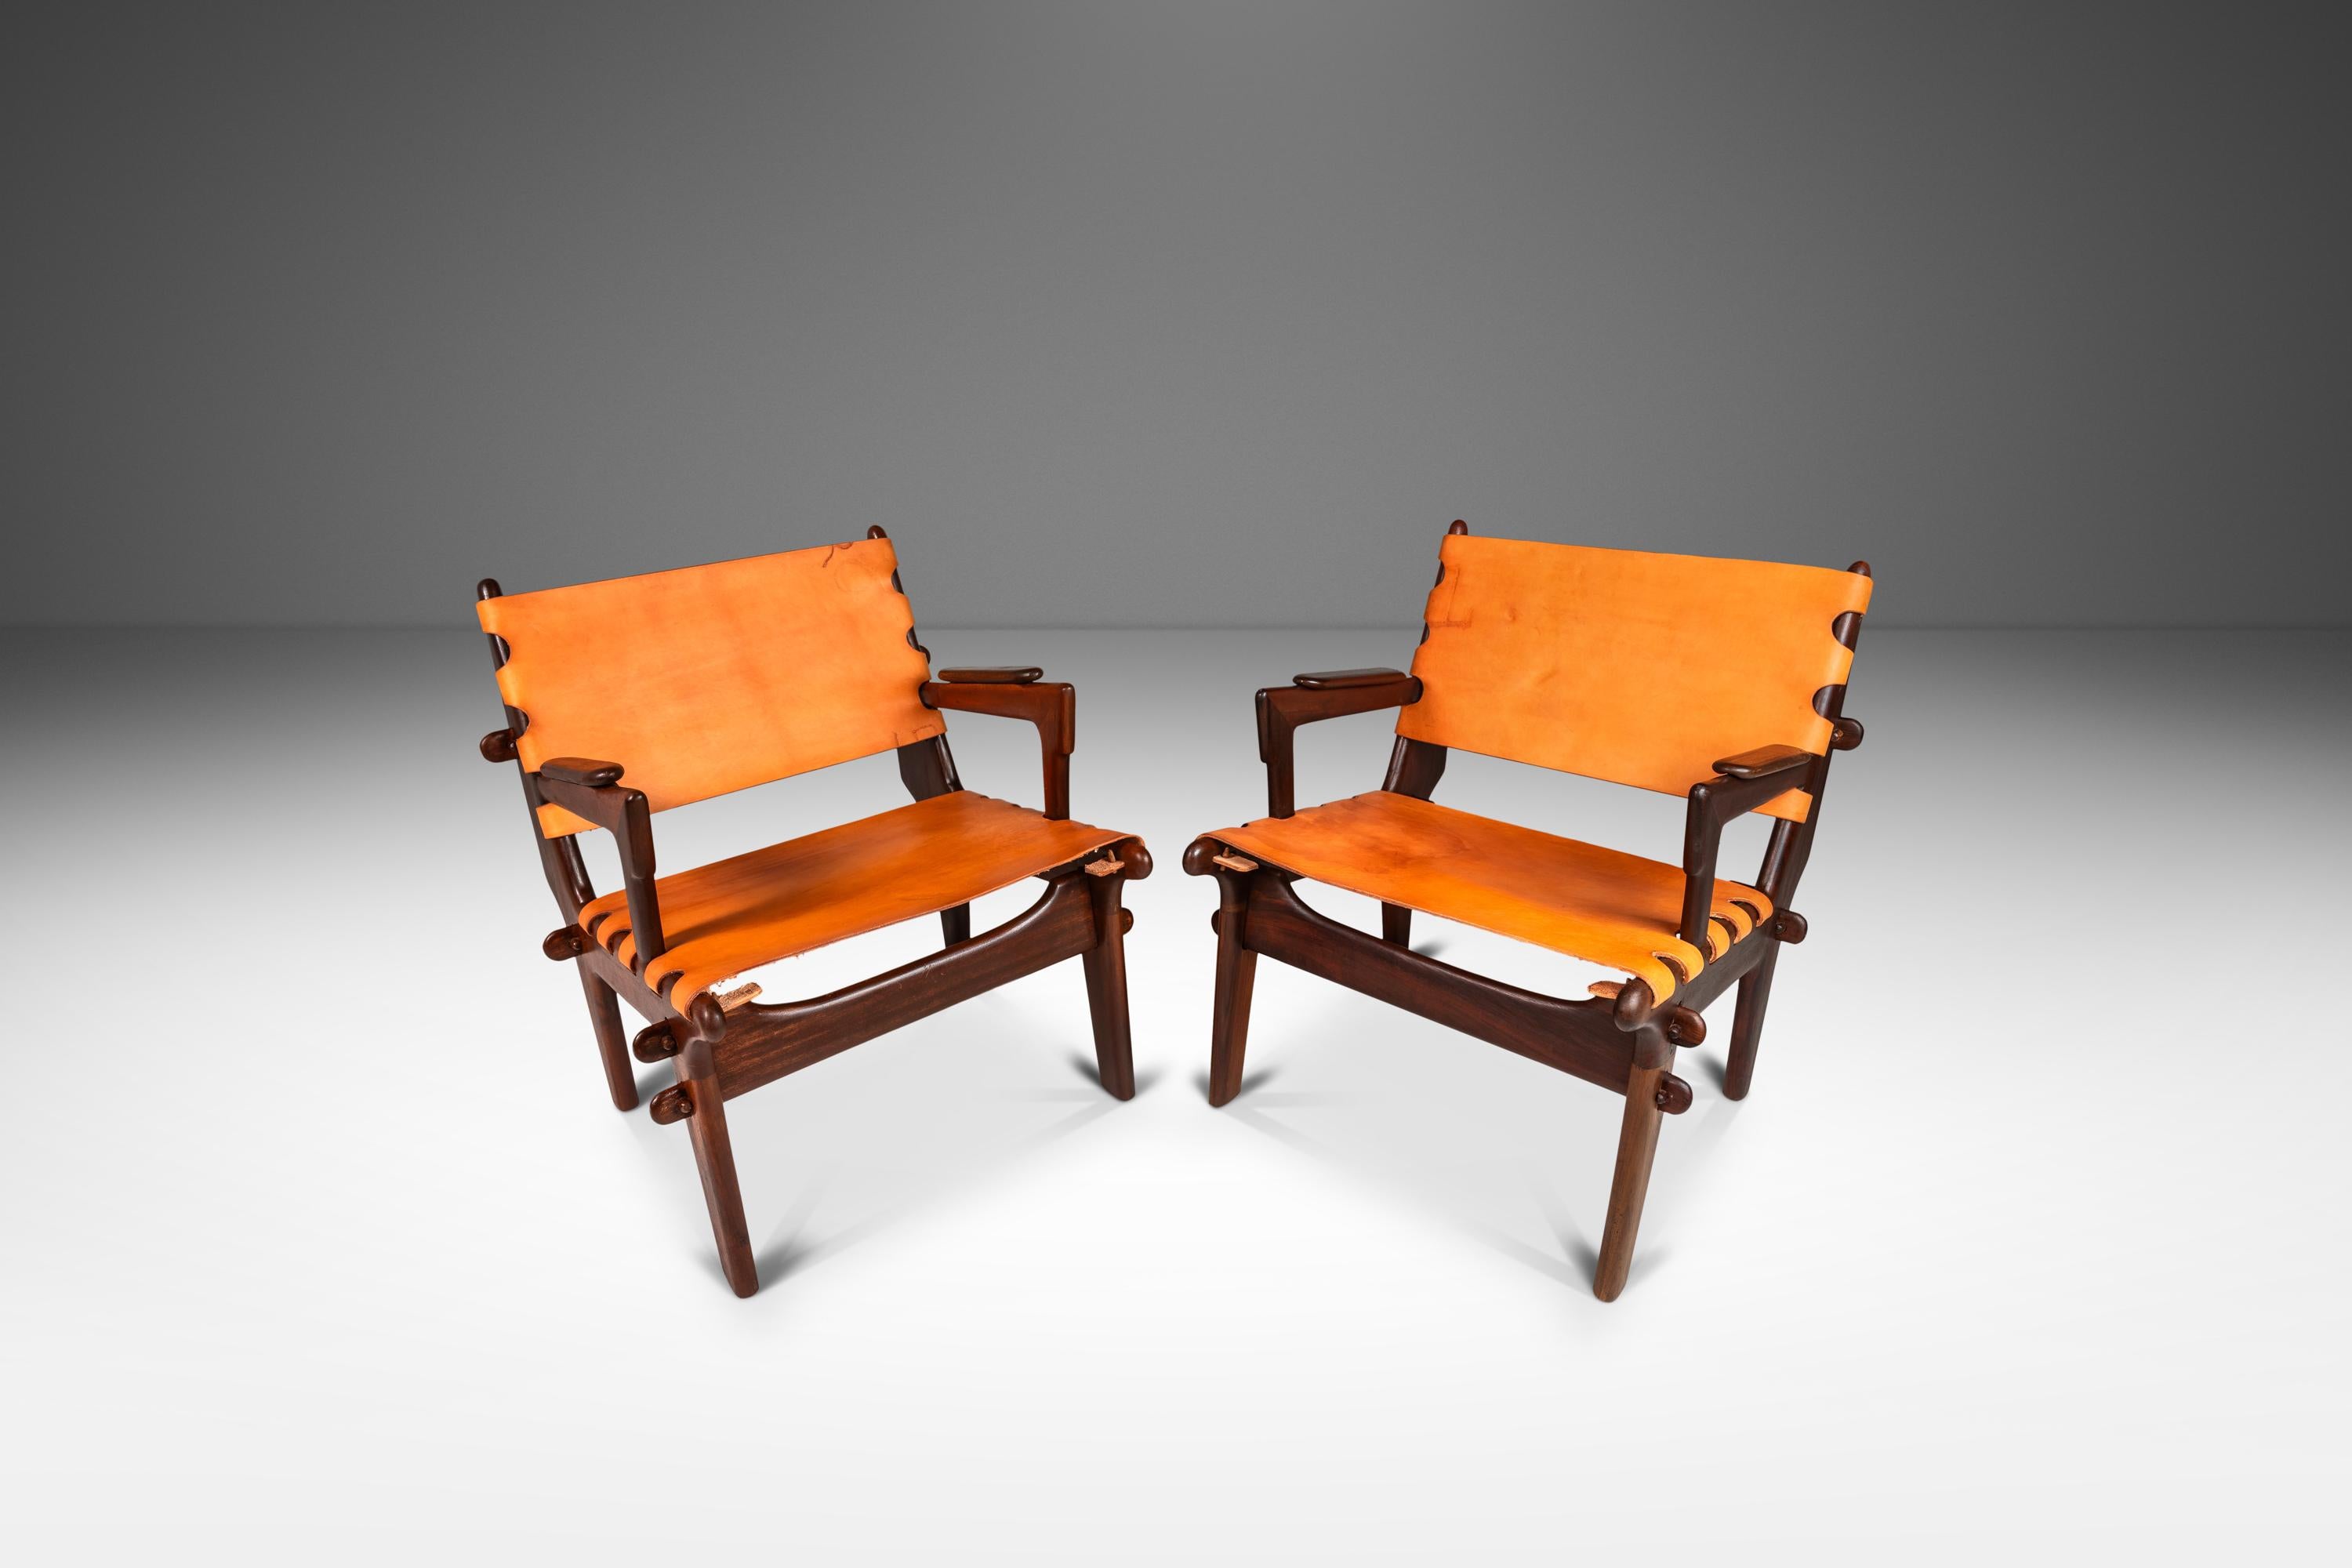  Voici un ensemble rare de chaises à bretelles de l'incomparable Angel Pazmino. Récemment et minutieusement restauré par notre équipe d'artisans, cet ensemble emblématique a retrouvé une nouvelle jeunesse et nous adorons le résultat. Les cadres en